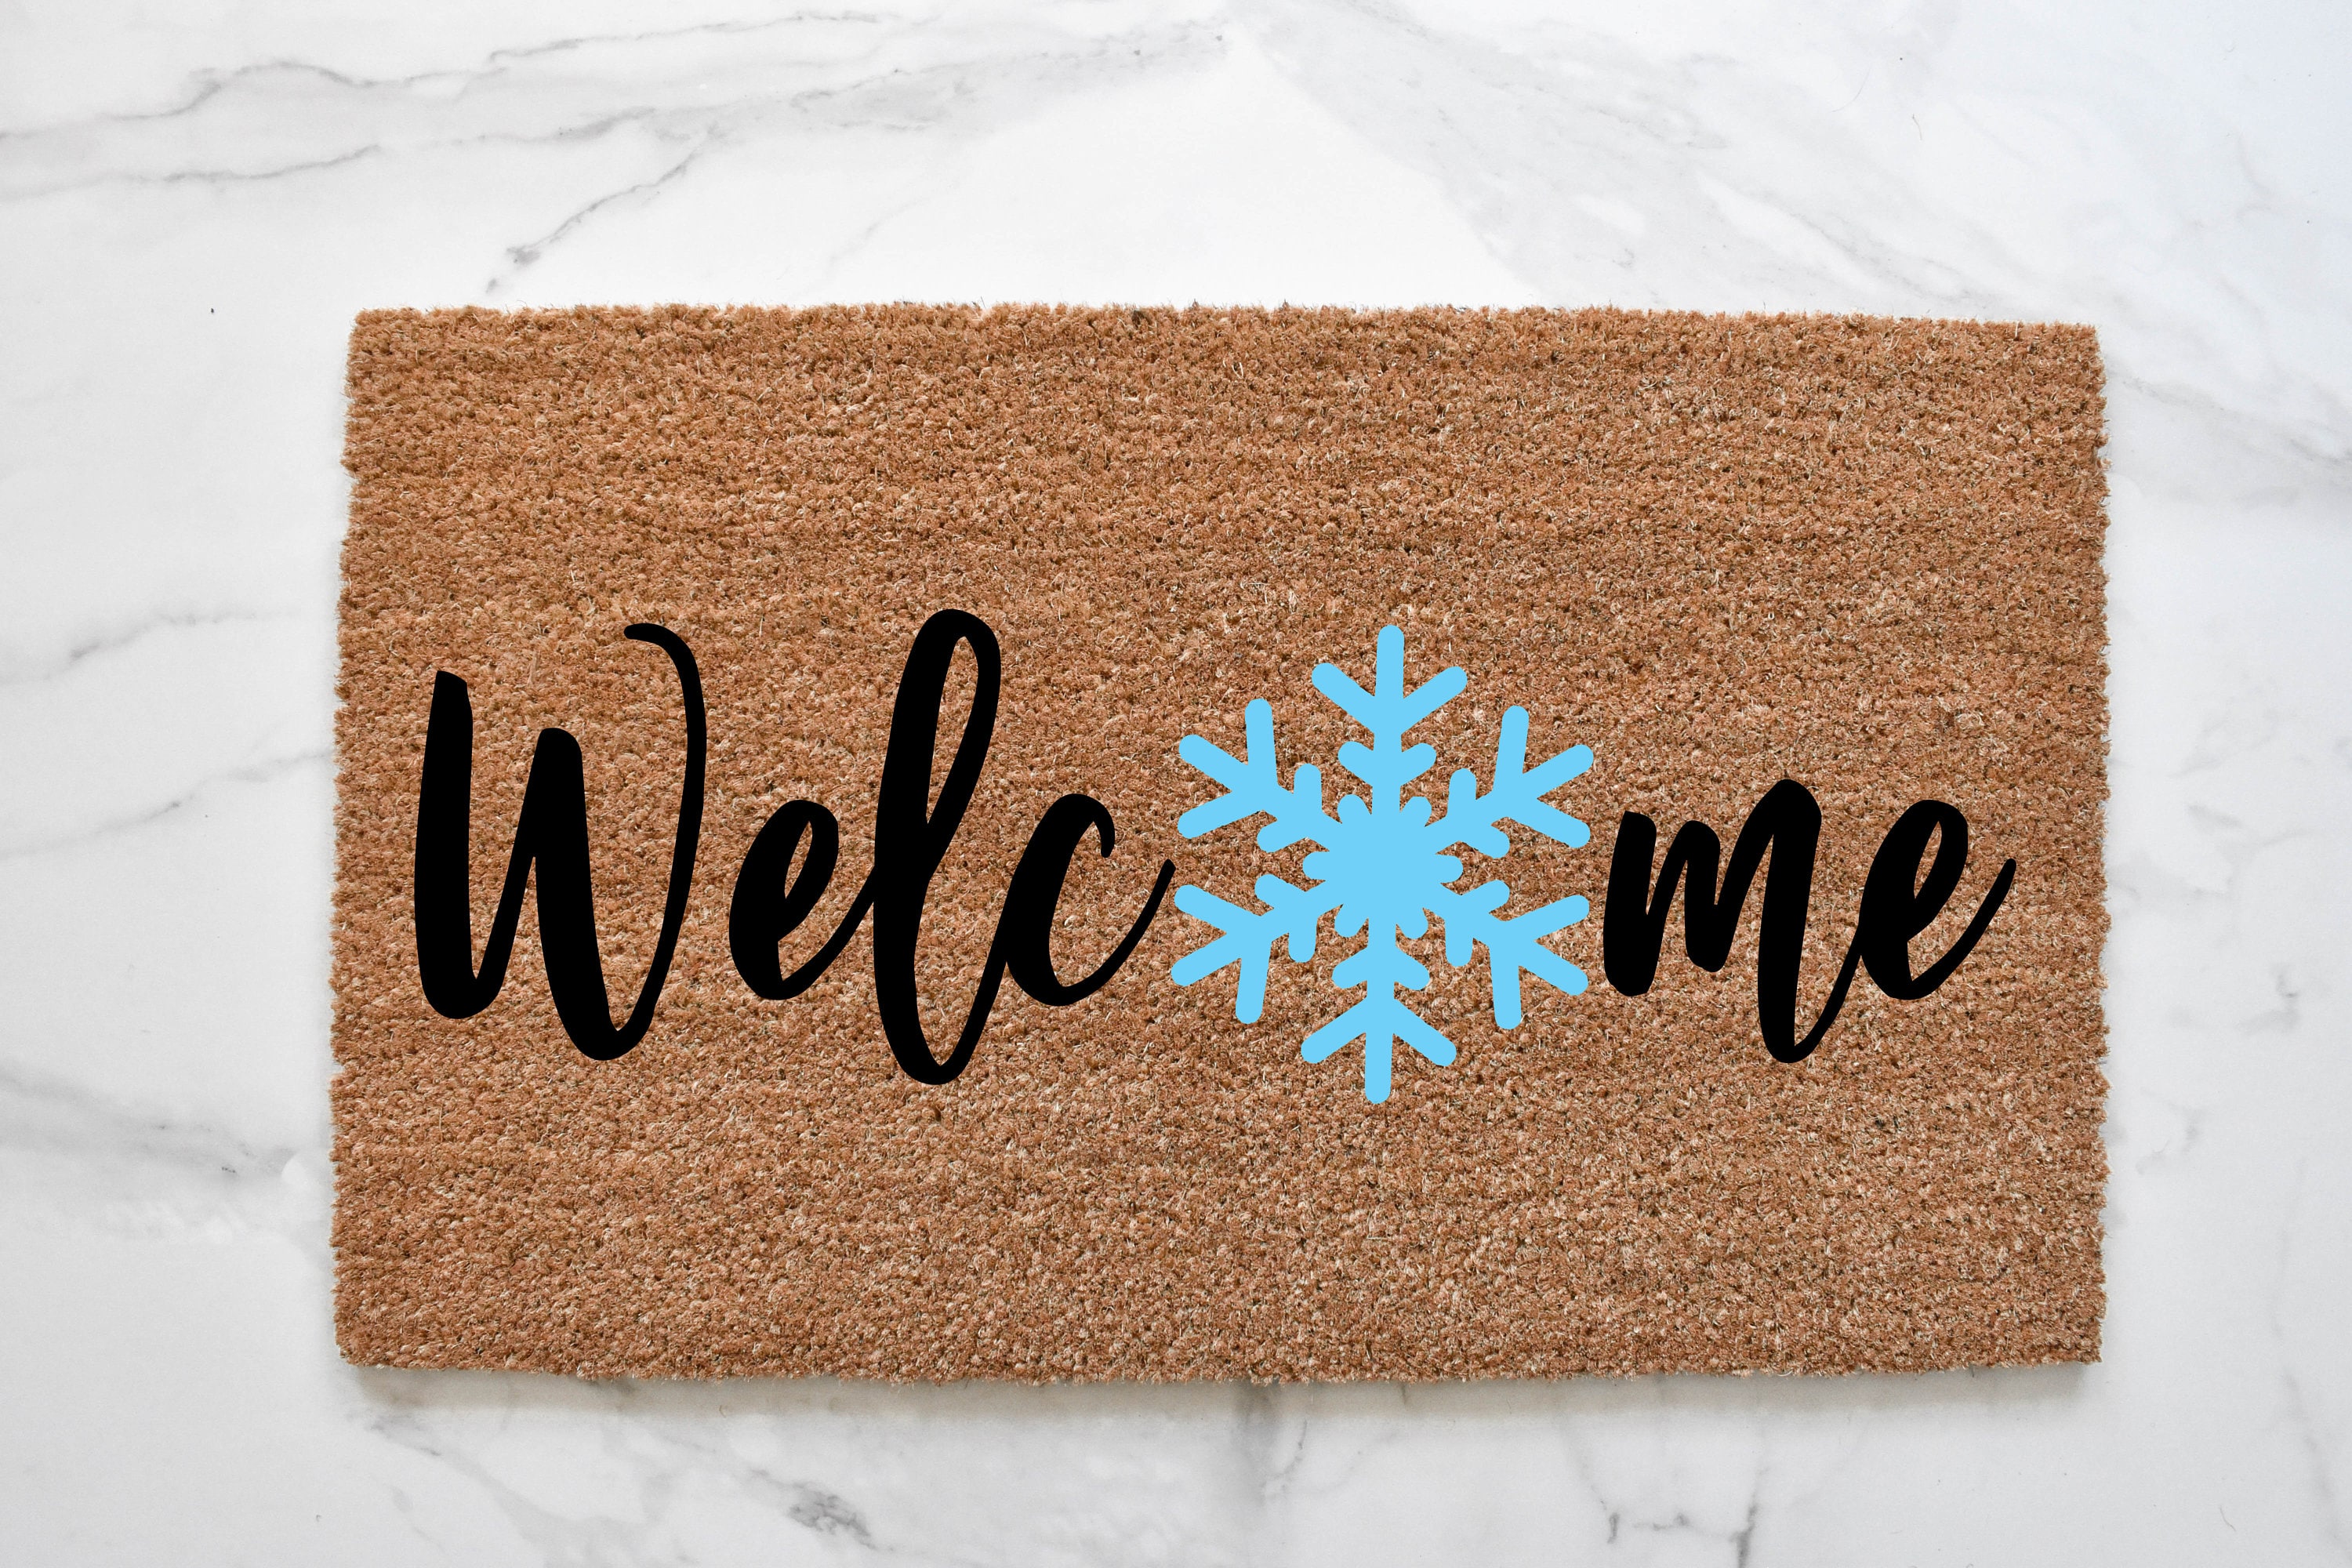 Non-Slip and Washable Winter Doormat Rubber Back Snowflakes Door Mat Rugs  for Indoor Outdoor Christmas Door Mat Xmas Welcome Christmas Mat